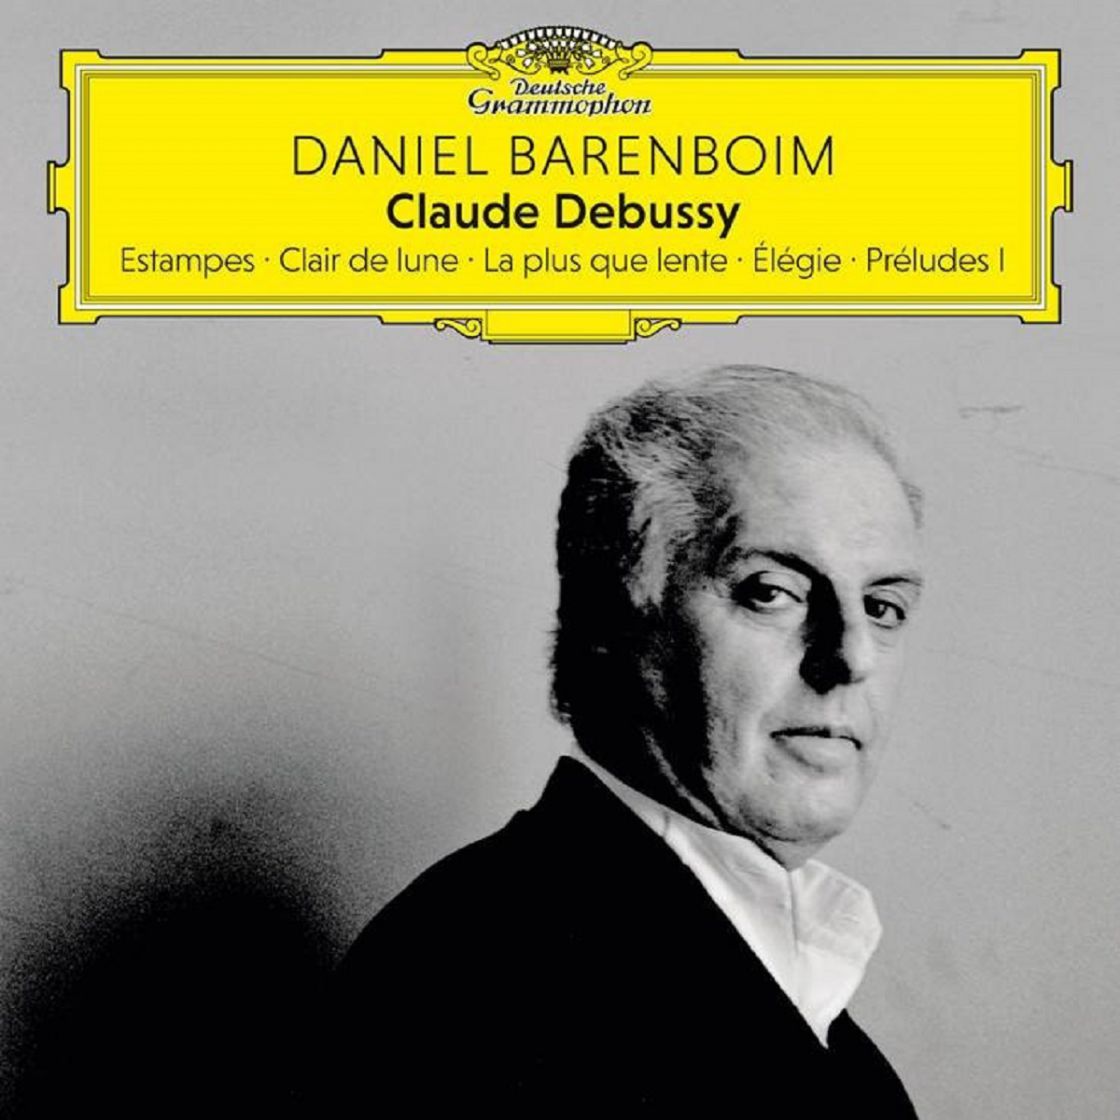 DANIEL BARENBOIM Claude Debussy